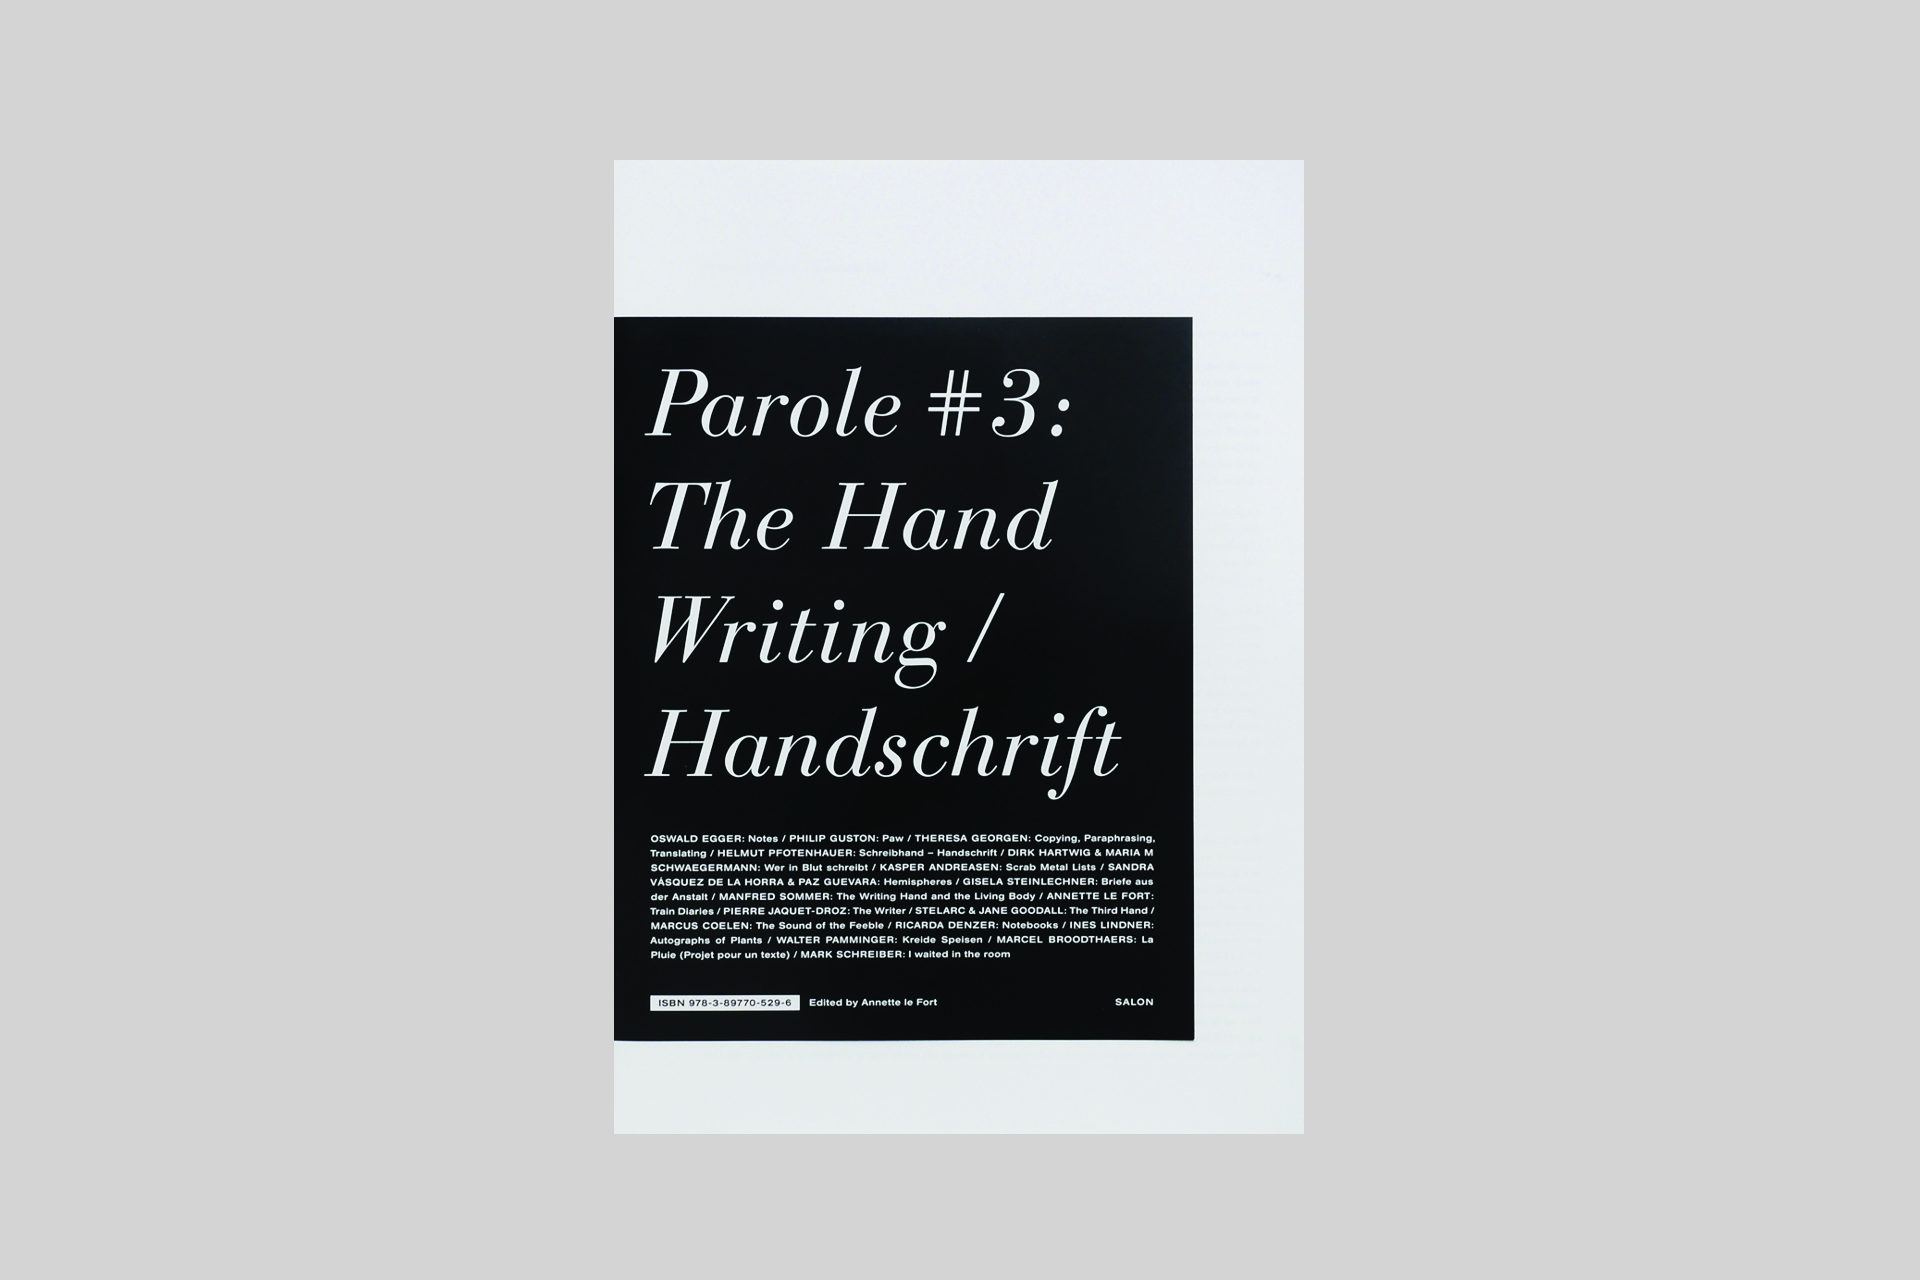 PAROLE #3: The Hand Writing / Handschrift